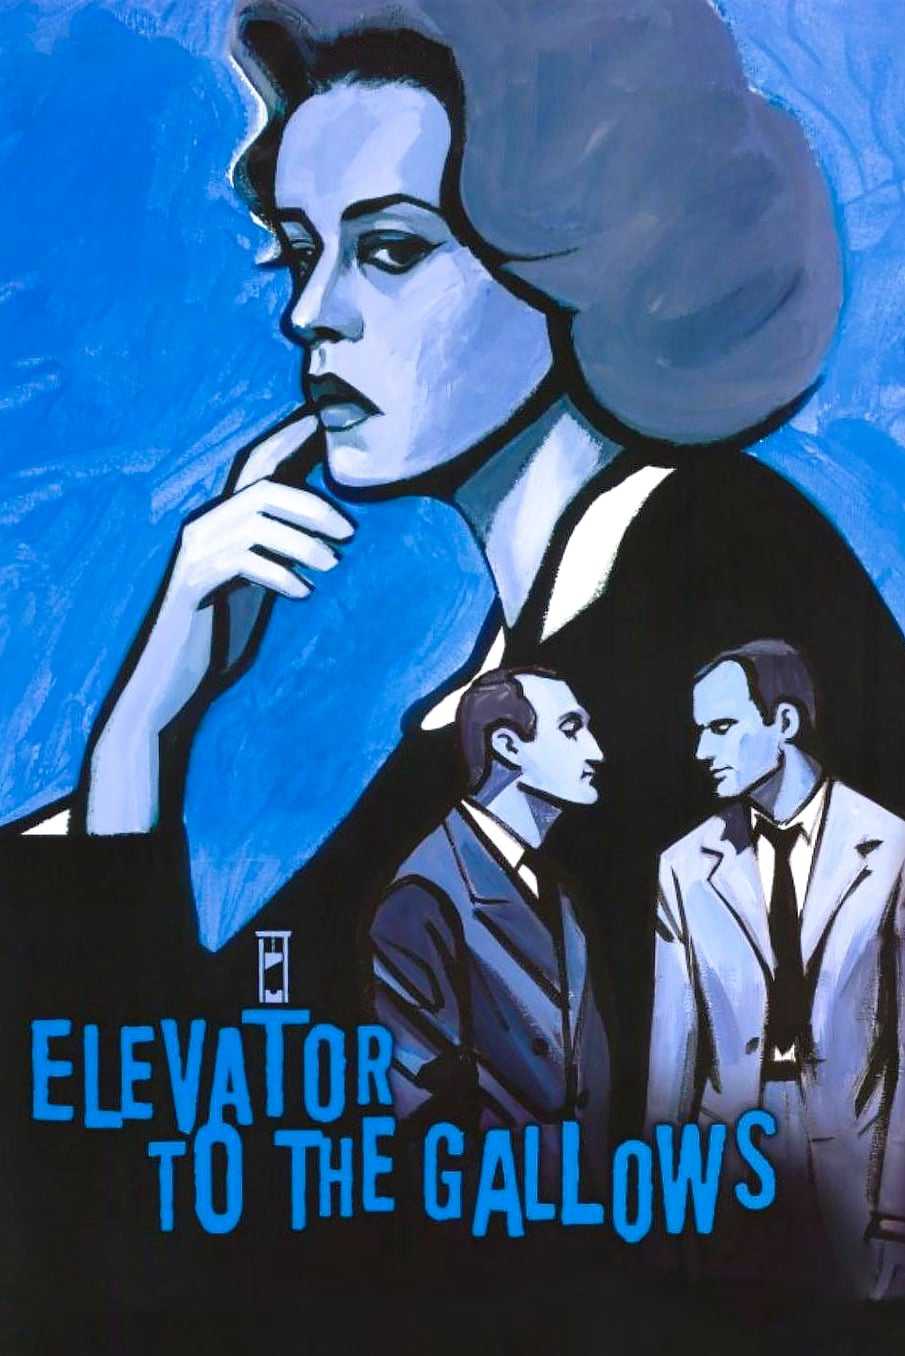 Elevator to the Gallows - Elevator to the Gallows